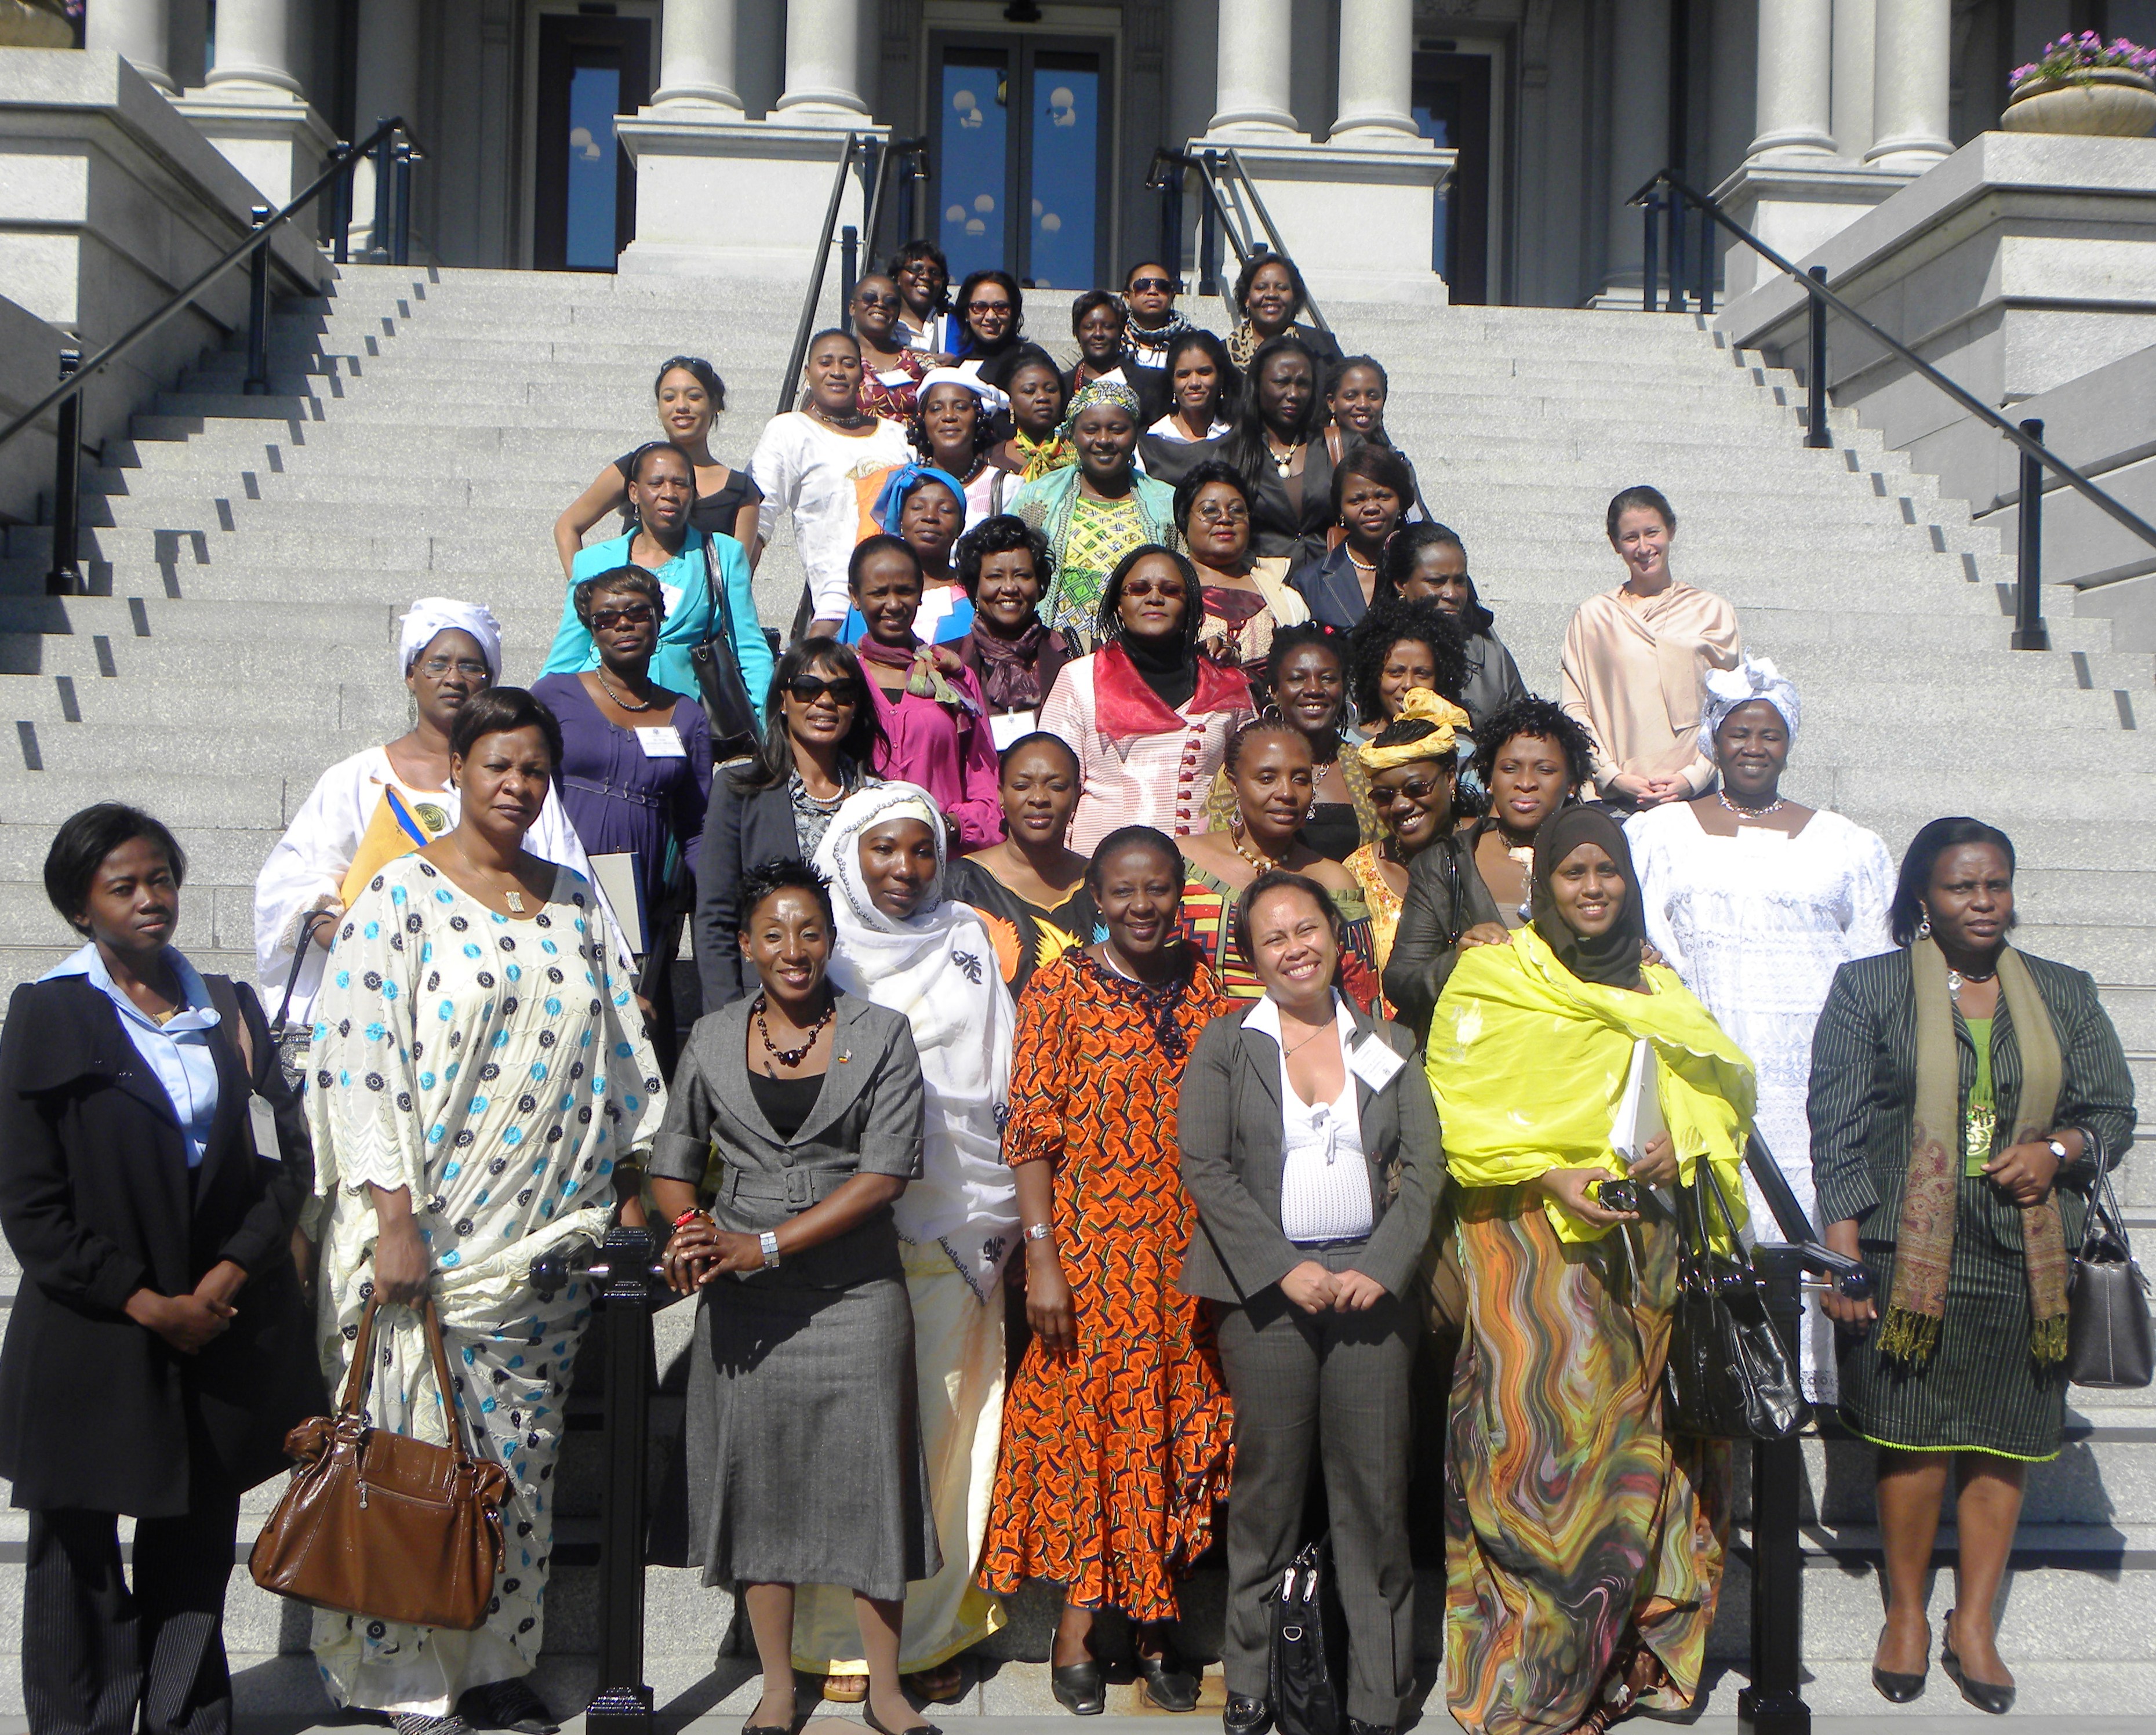 The African Women’s Entrepreneurship Program (AWEP) visits the White House